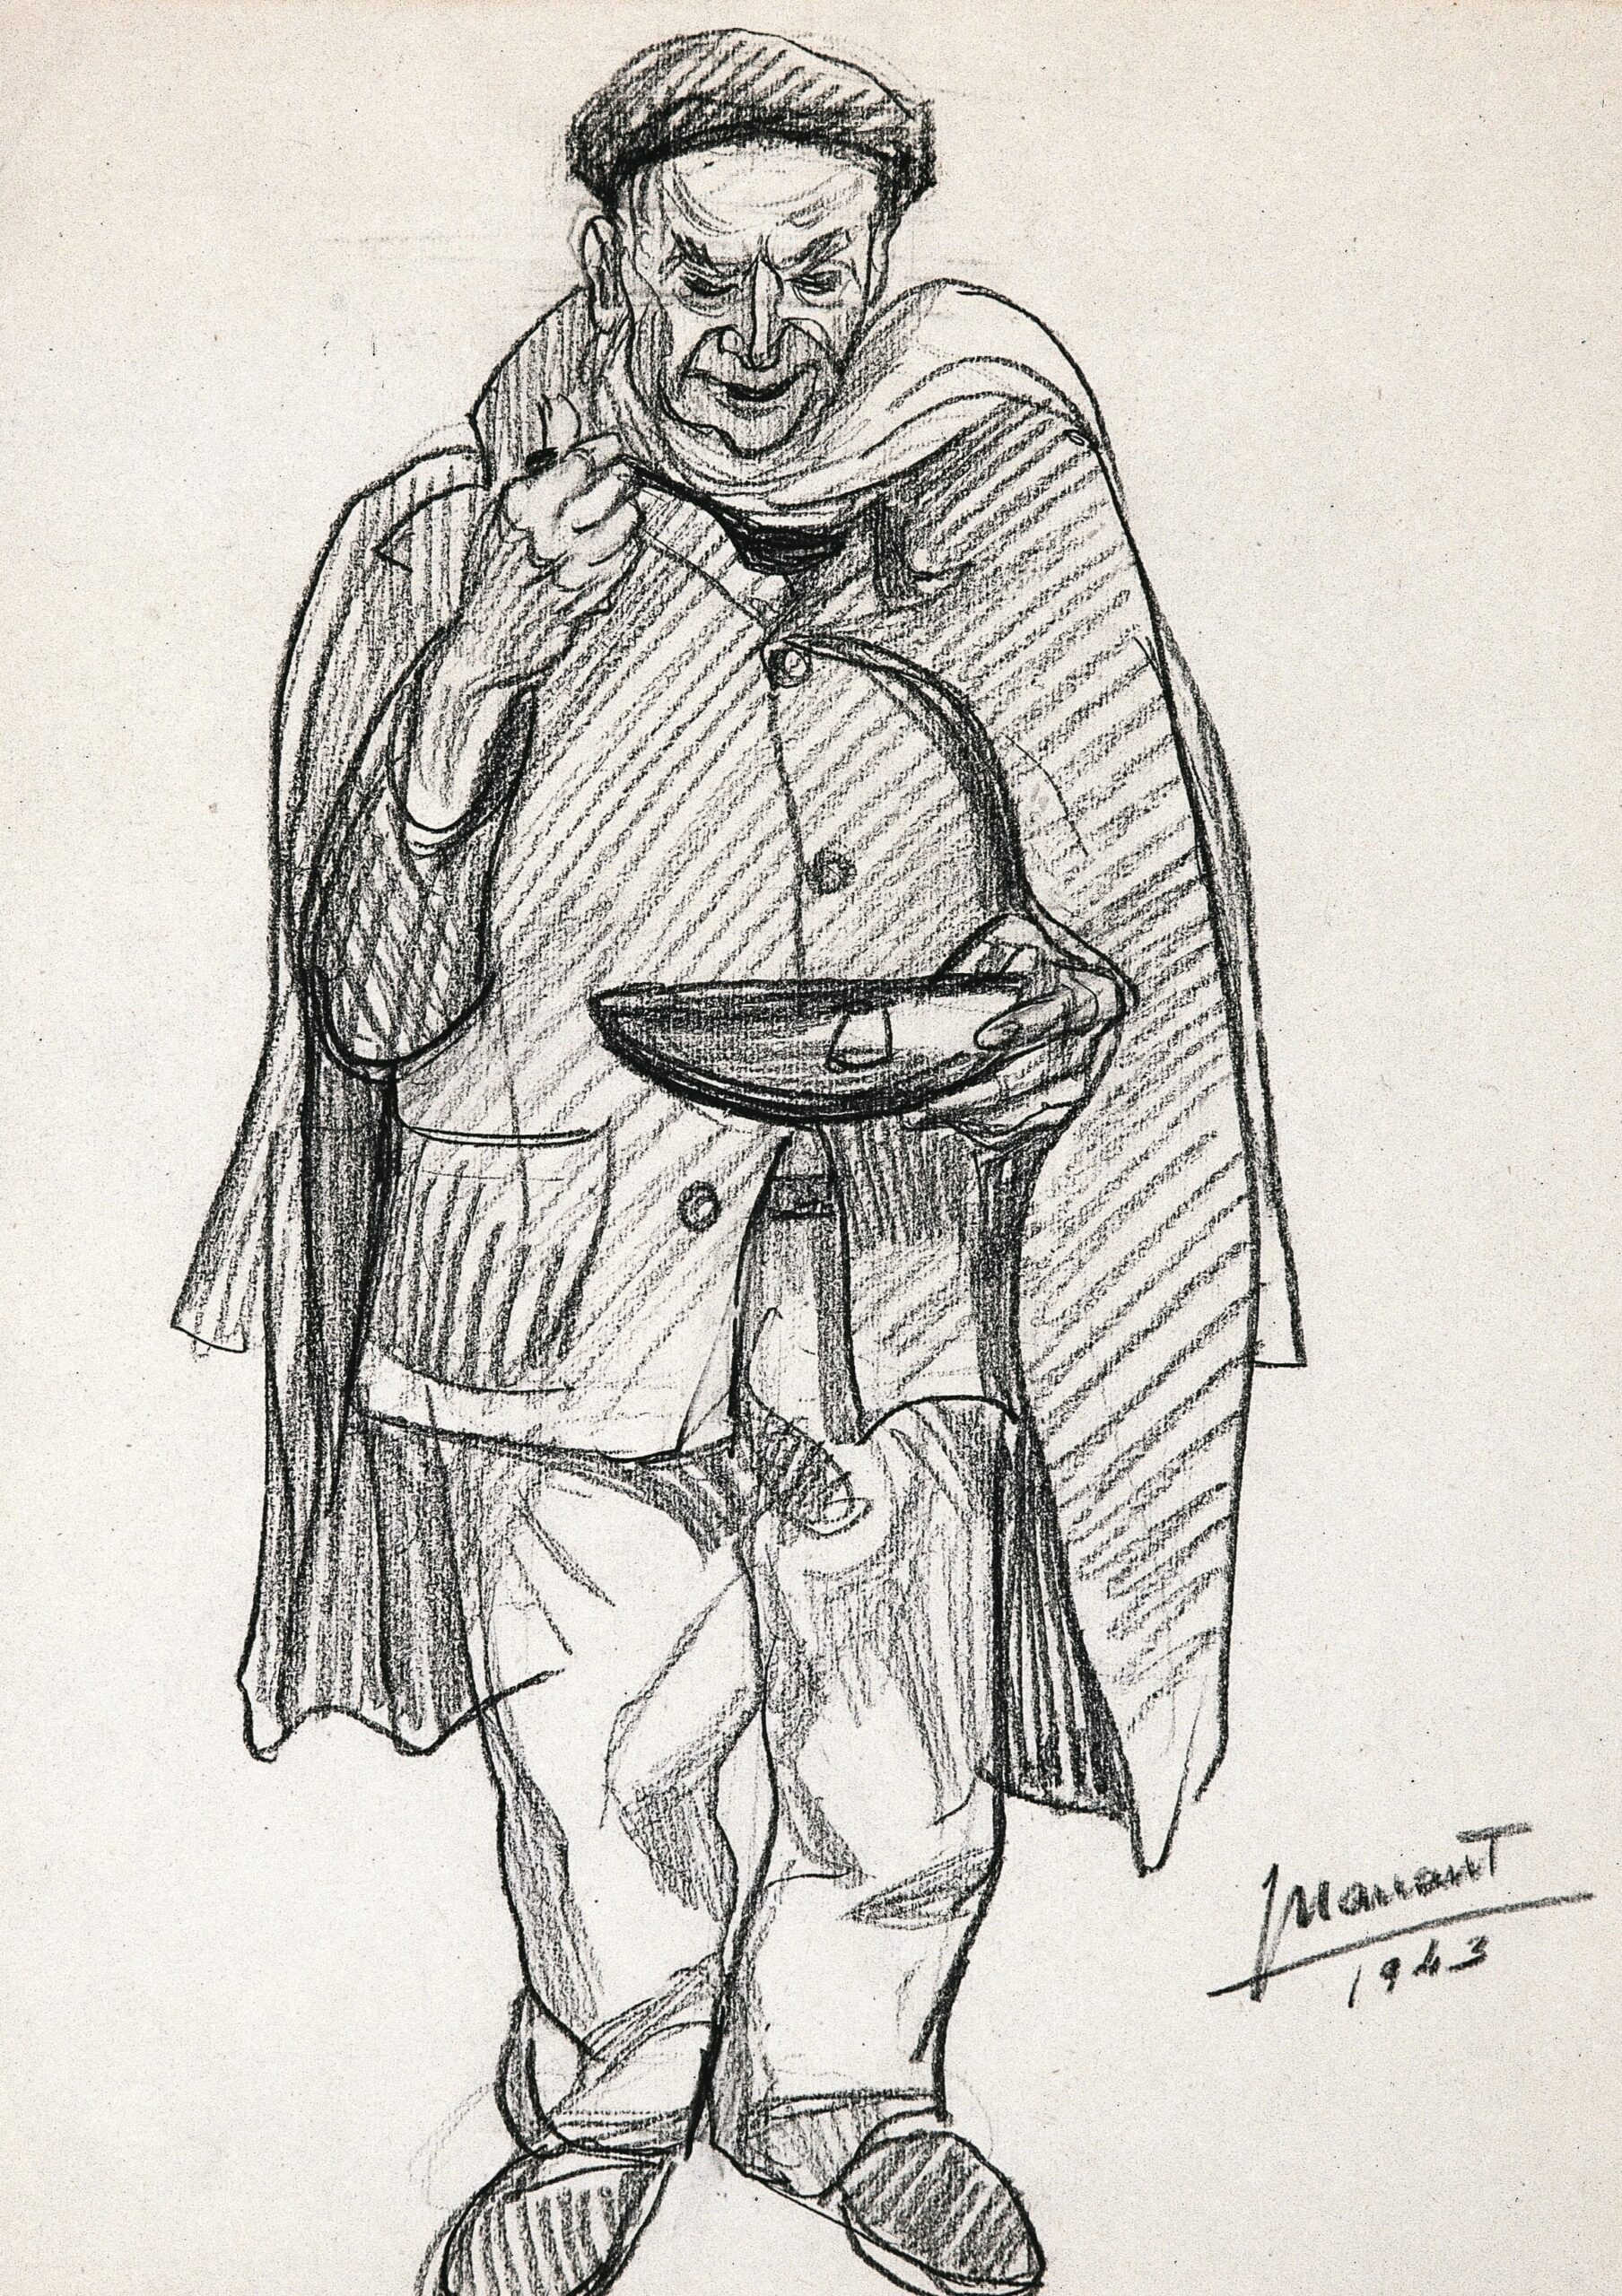 Dibujo de José Manaut titulado Preso comiendo, de pie y con boina, 1943. Carboncillo sobre papel.